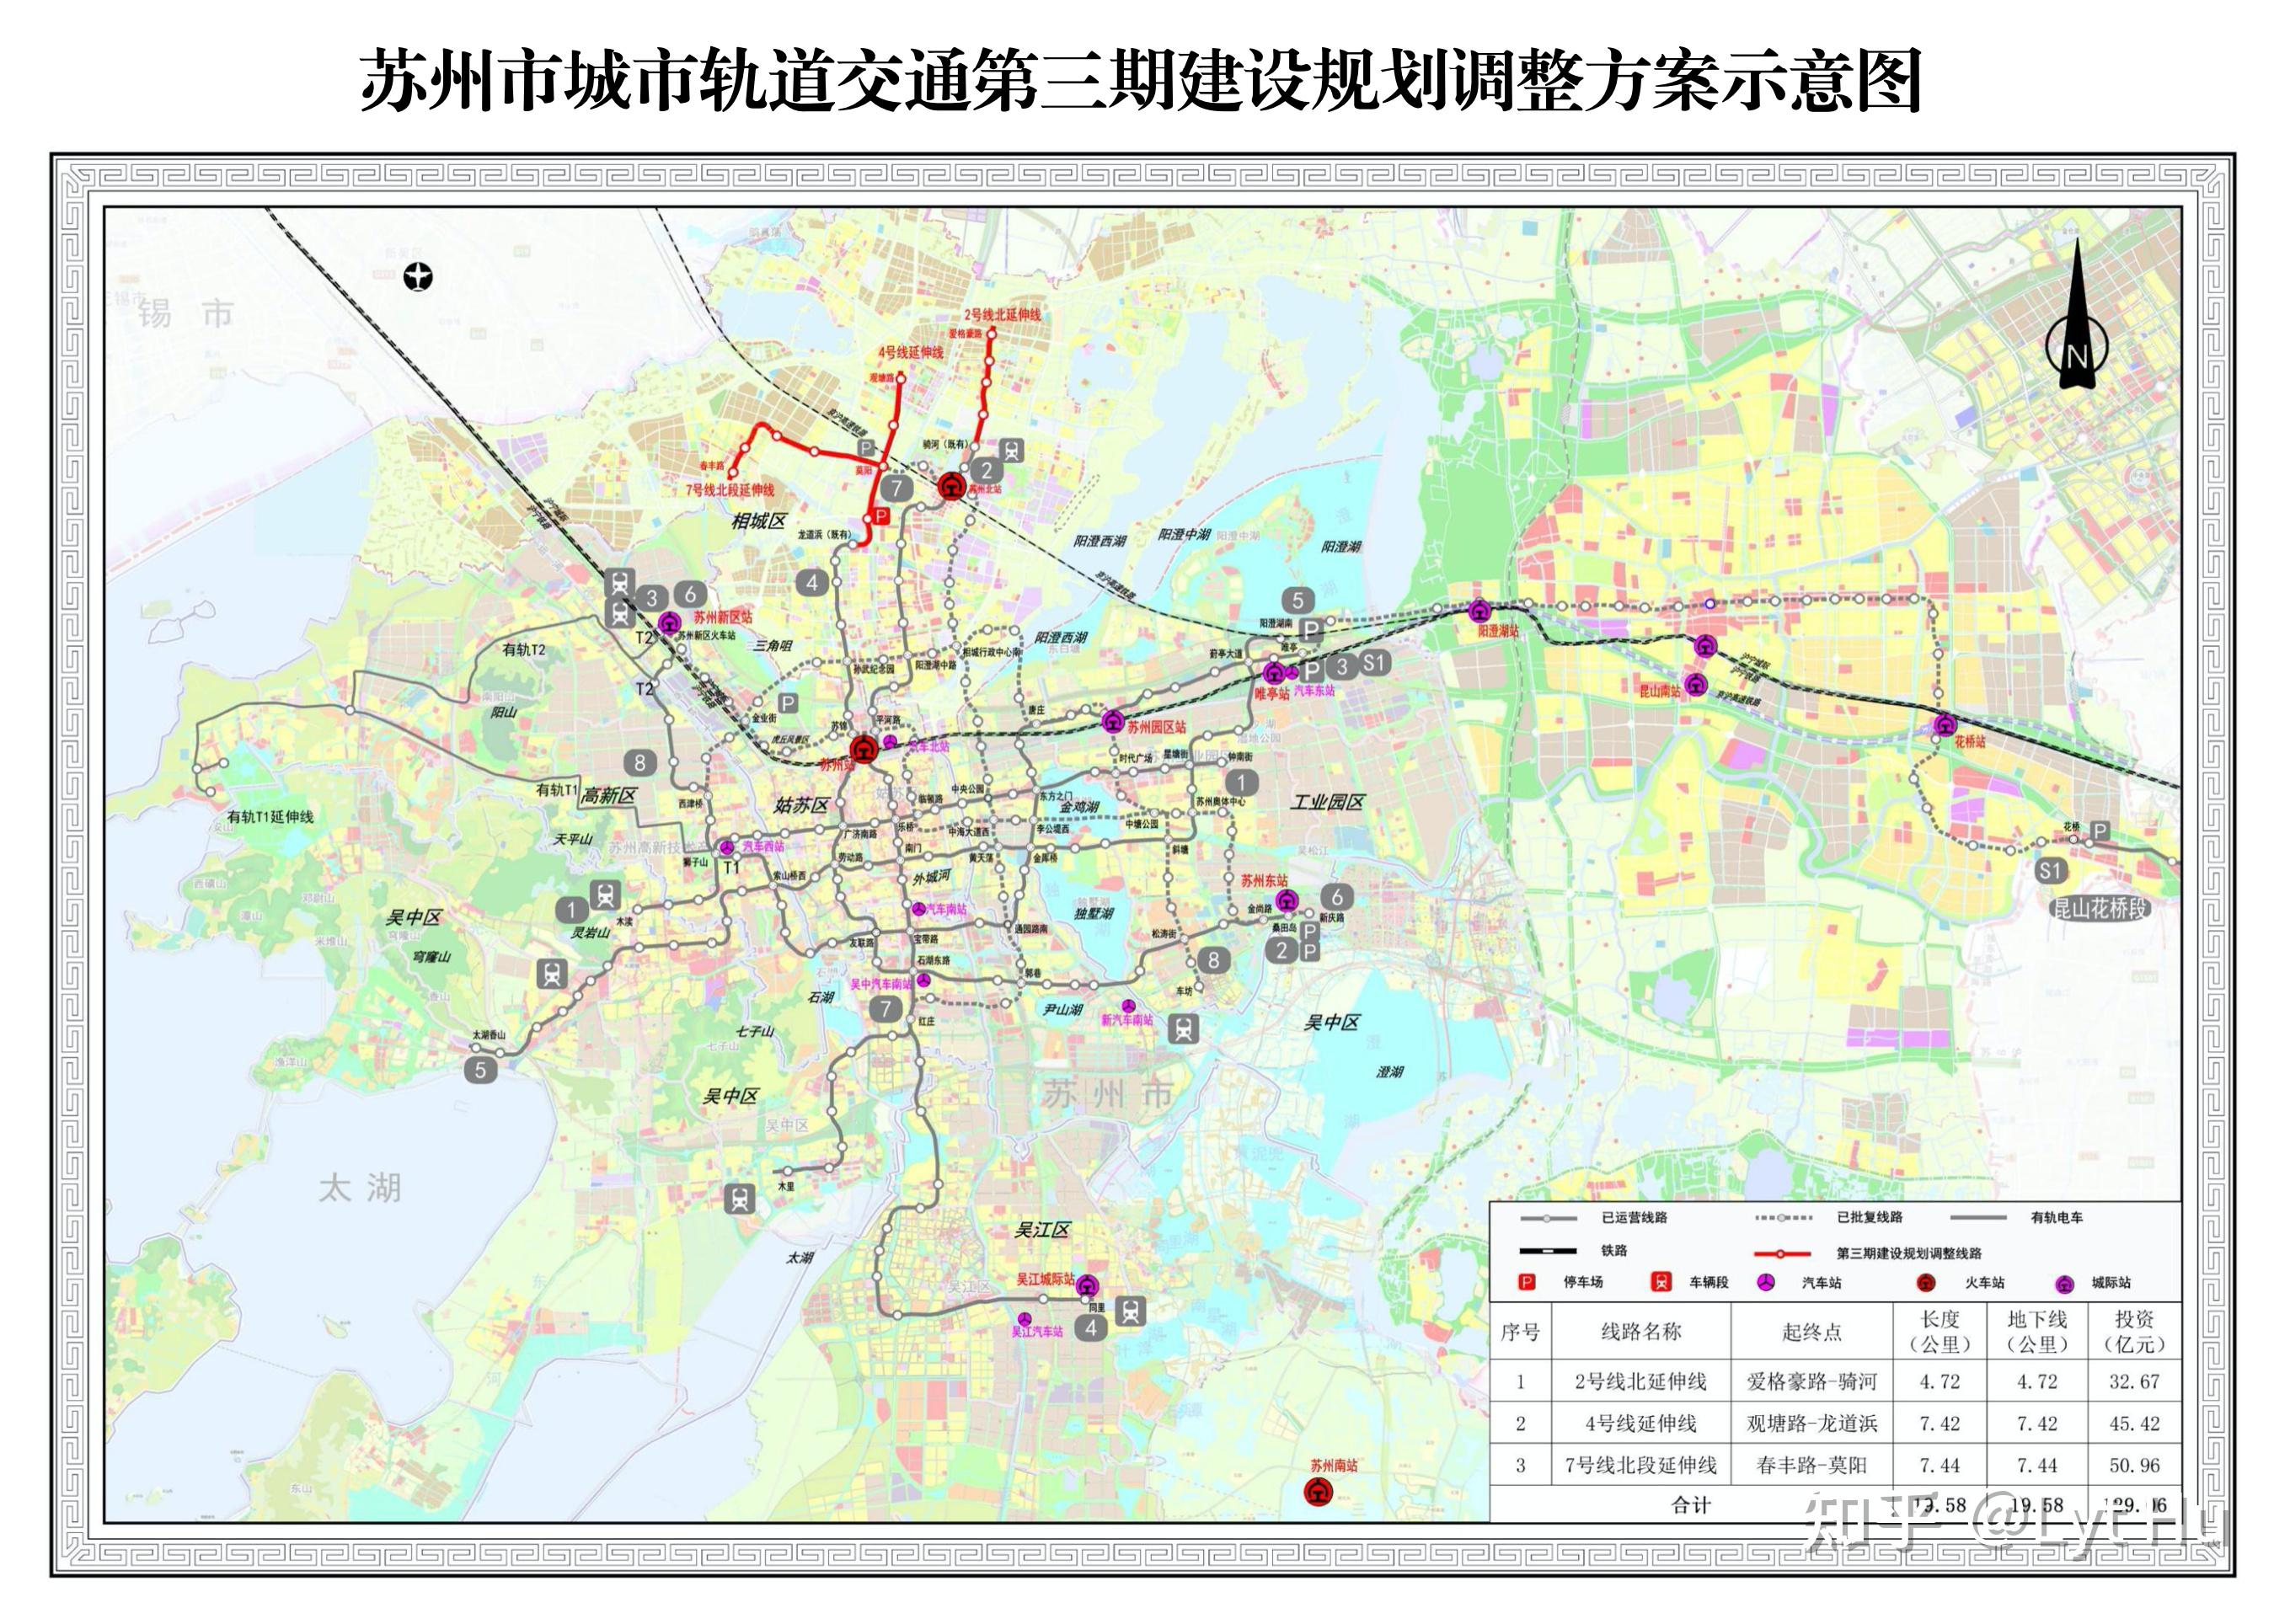 苏州轨道交通(三期规划调整)线路图